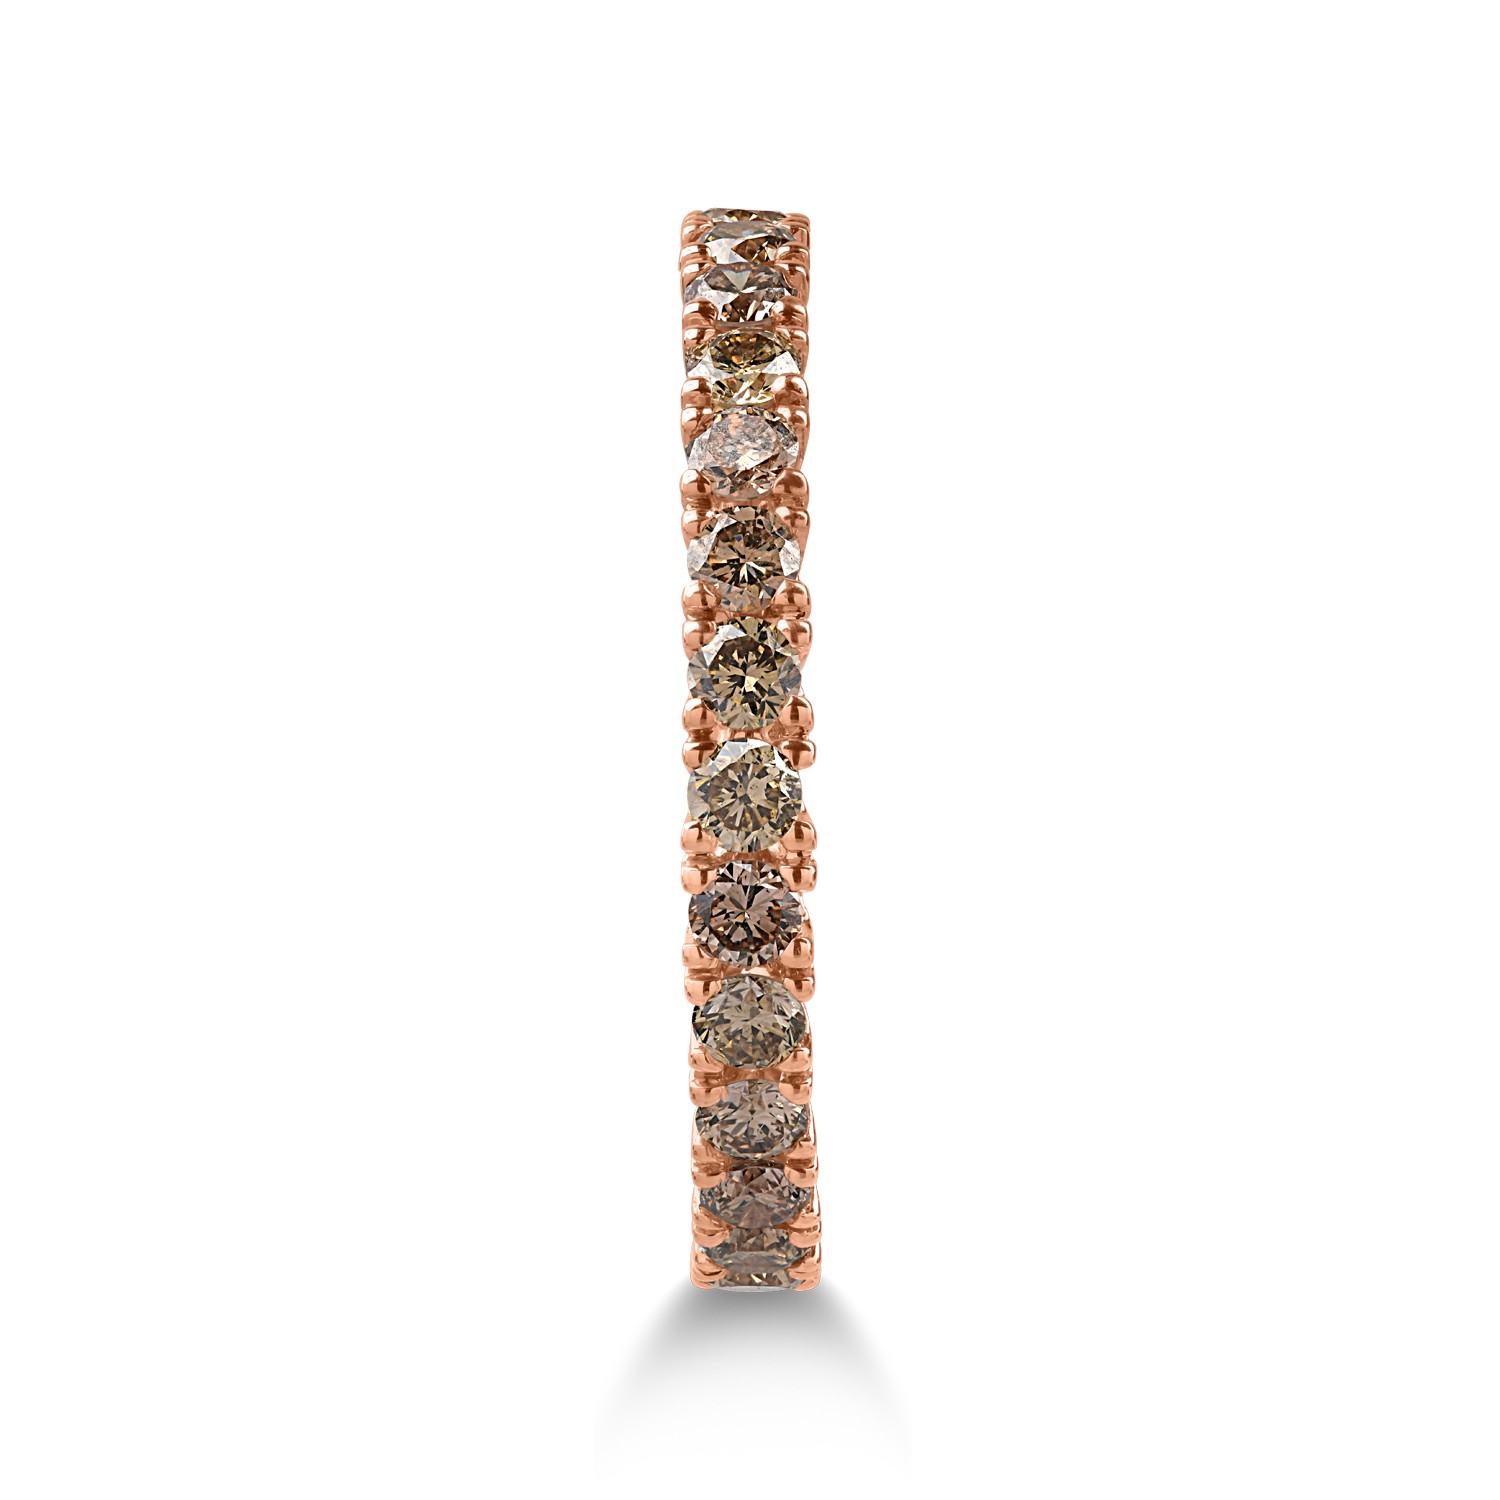 Örökkévalóság gyűrű rózsaszín aranyból 1.08ct barna gyémántokkal